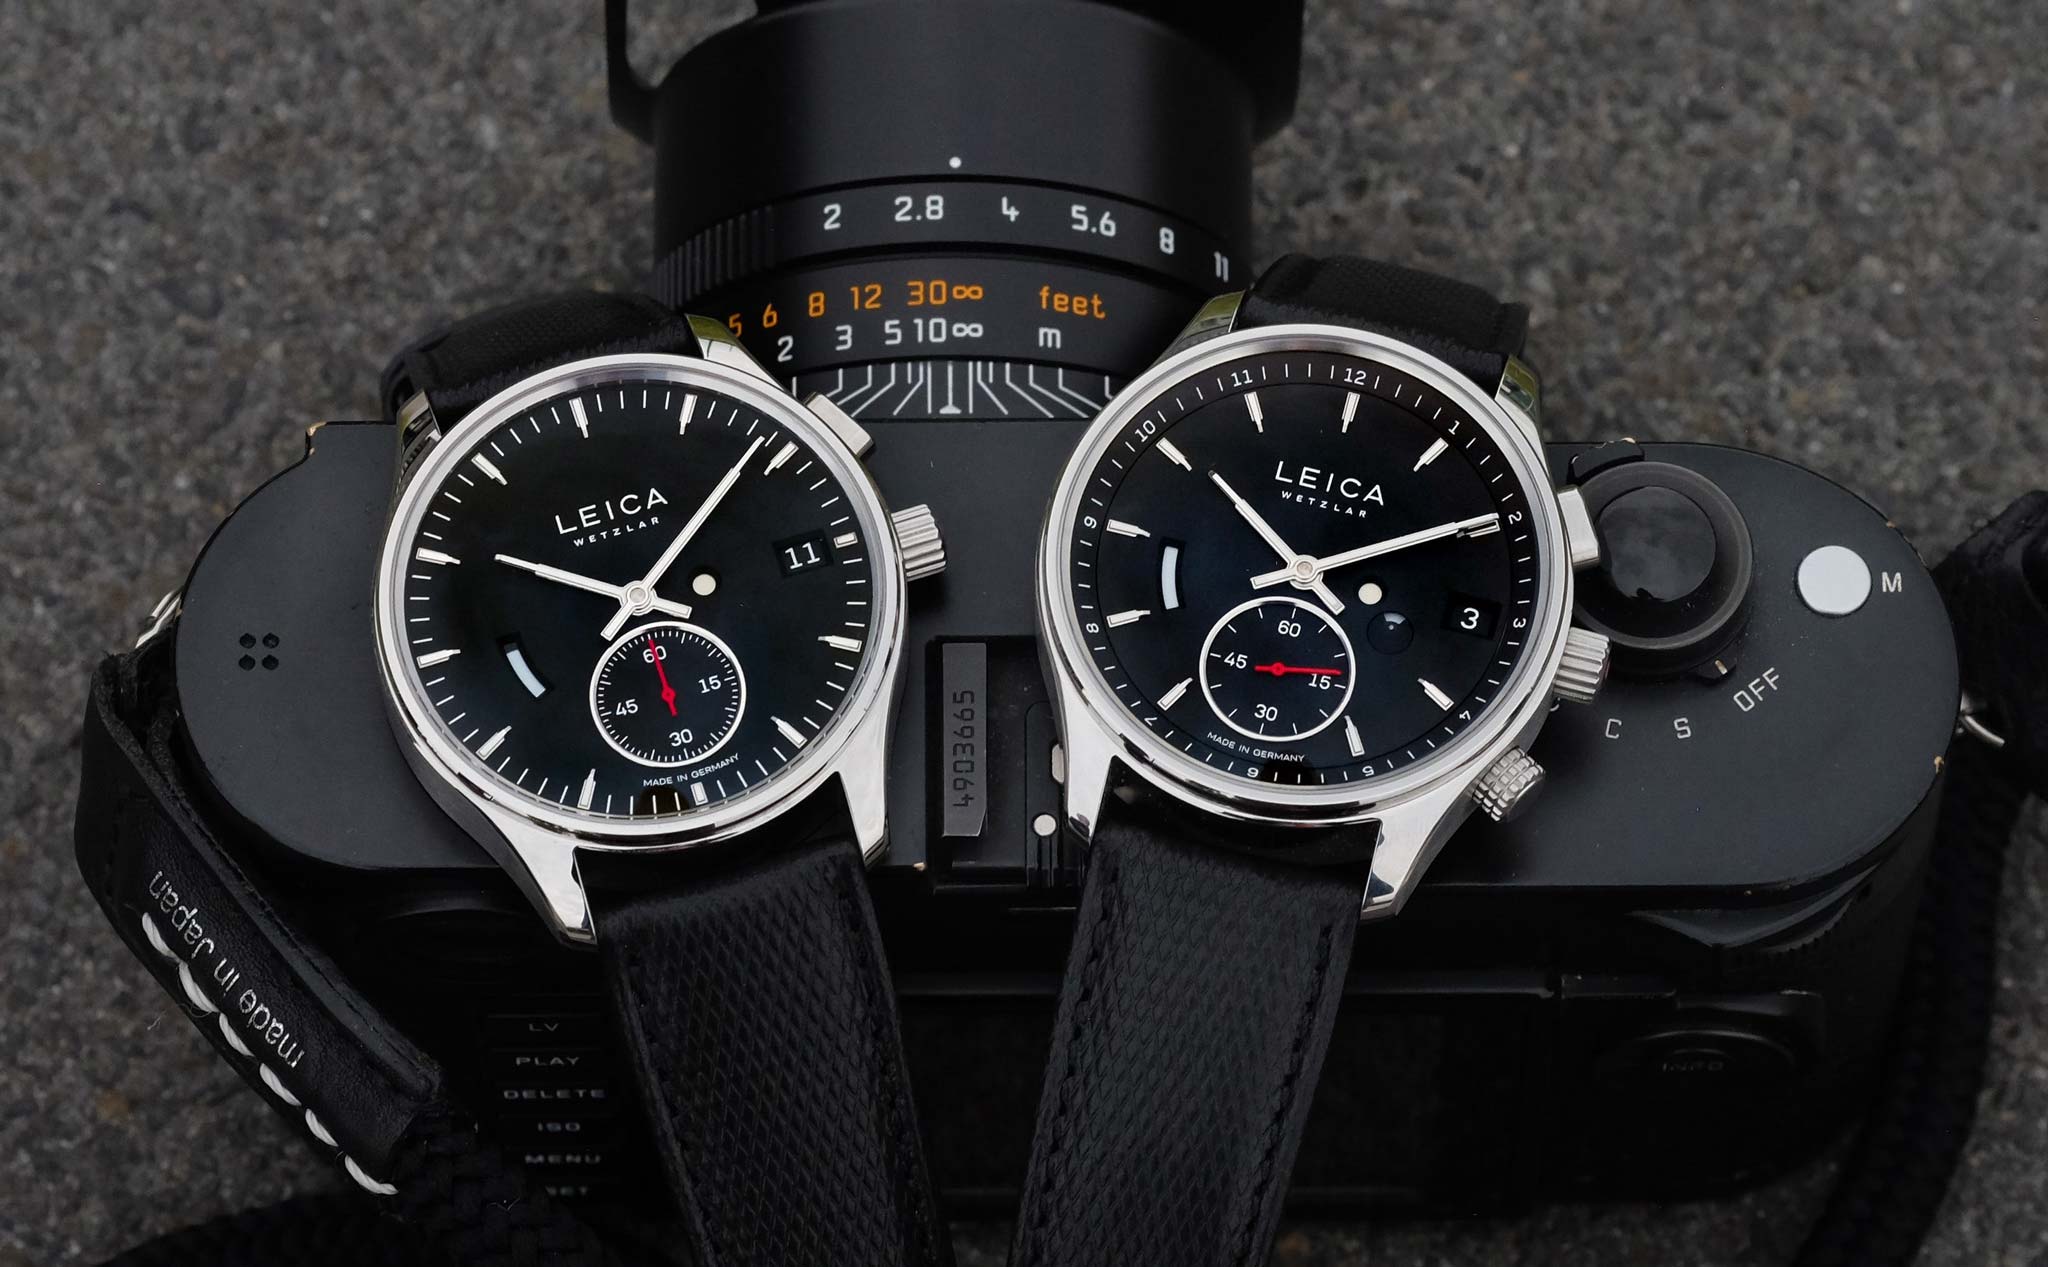 Đồng hồ Leica L1 và L2 chính thức ra mắt với giá bán cực đắt, hơn cả máy ảnh M11